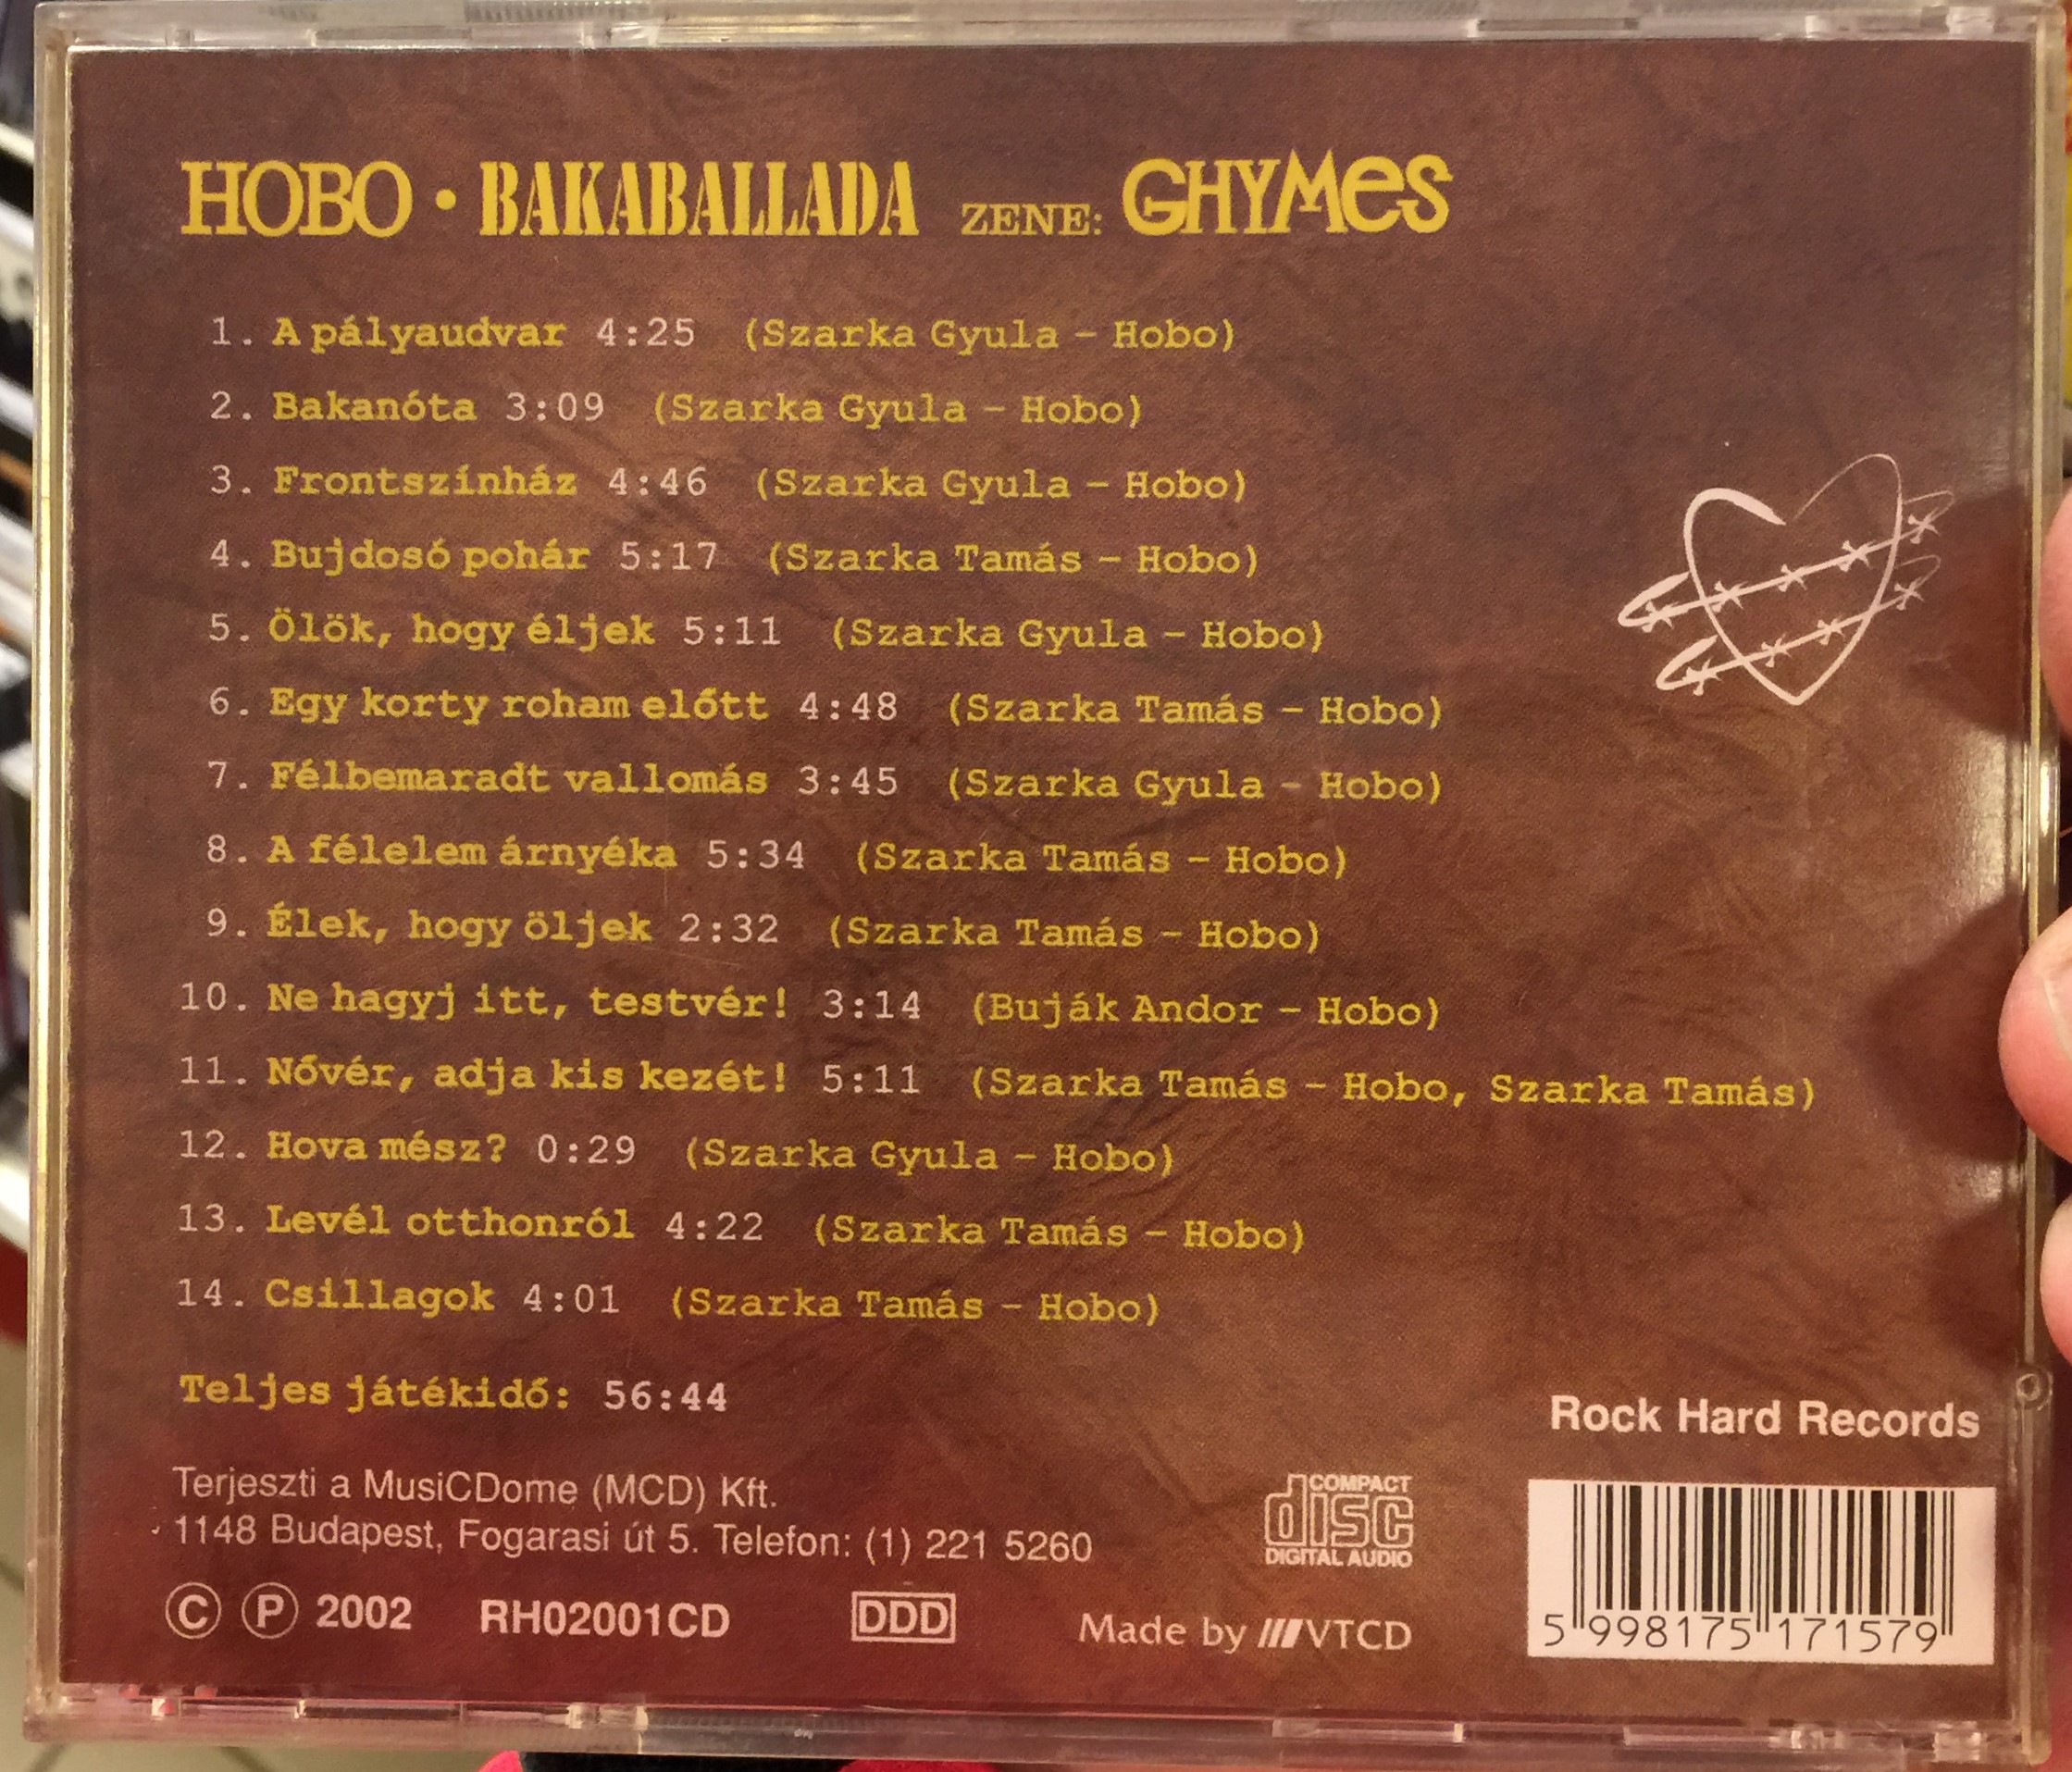 hobo-bakaballada-zene-ghymes-rock-hard-records-audio-cd-2002-rh02001cd-2-.jpg